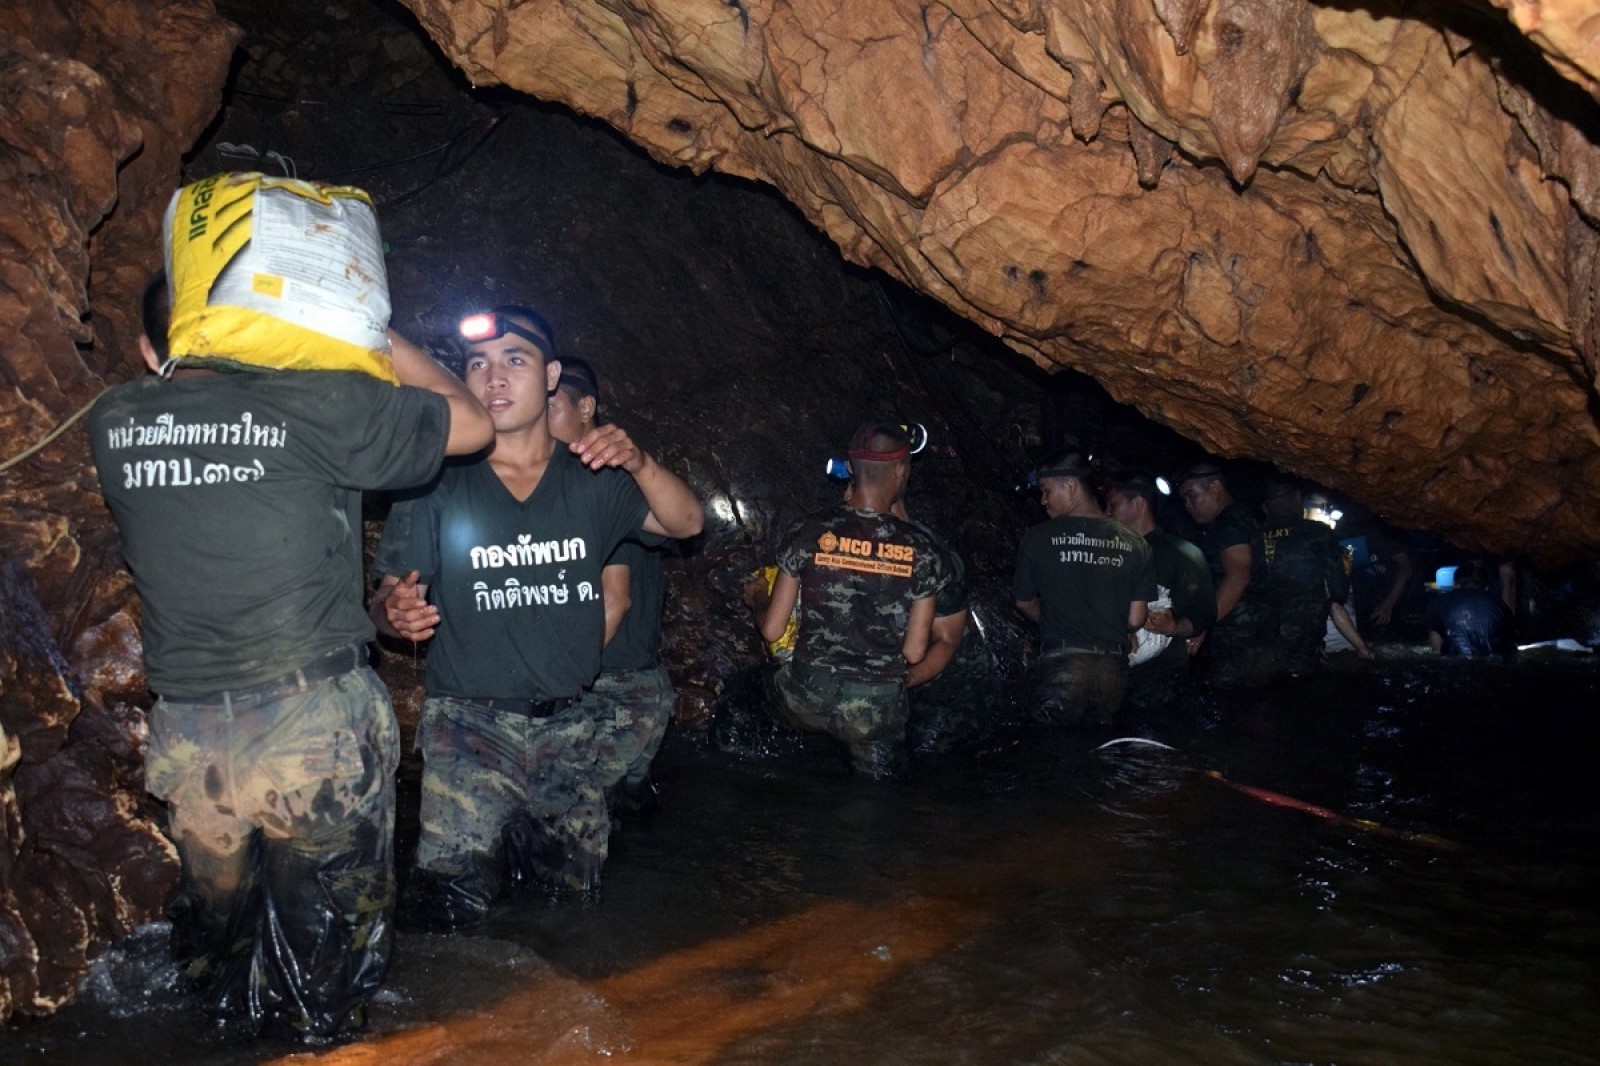 Η περίφημη νόσος των σπηλαίων κινδυνεύει να προσβάλει τα εγκλωβισμένα παιδιά στην Ταϊλάνδη σύμφωνα με ειδικούς